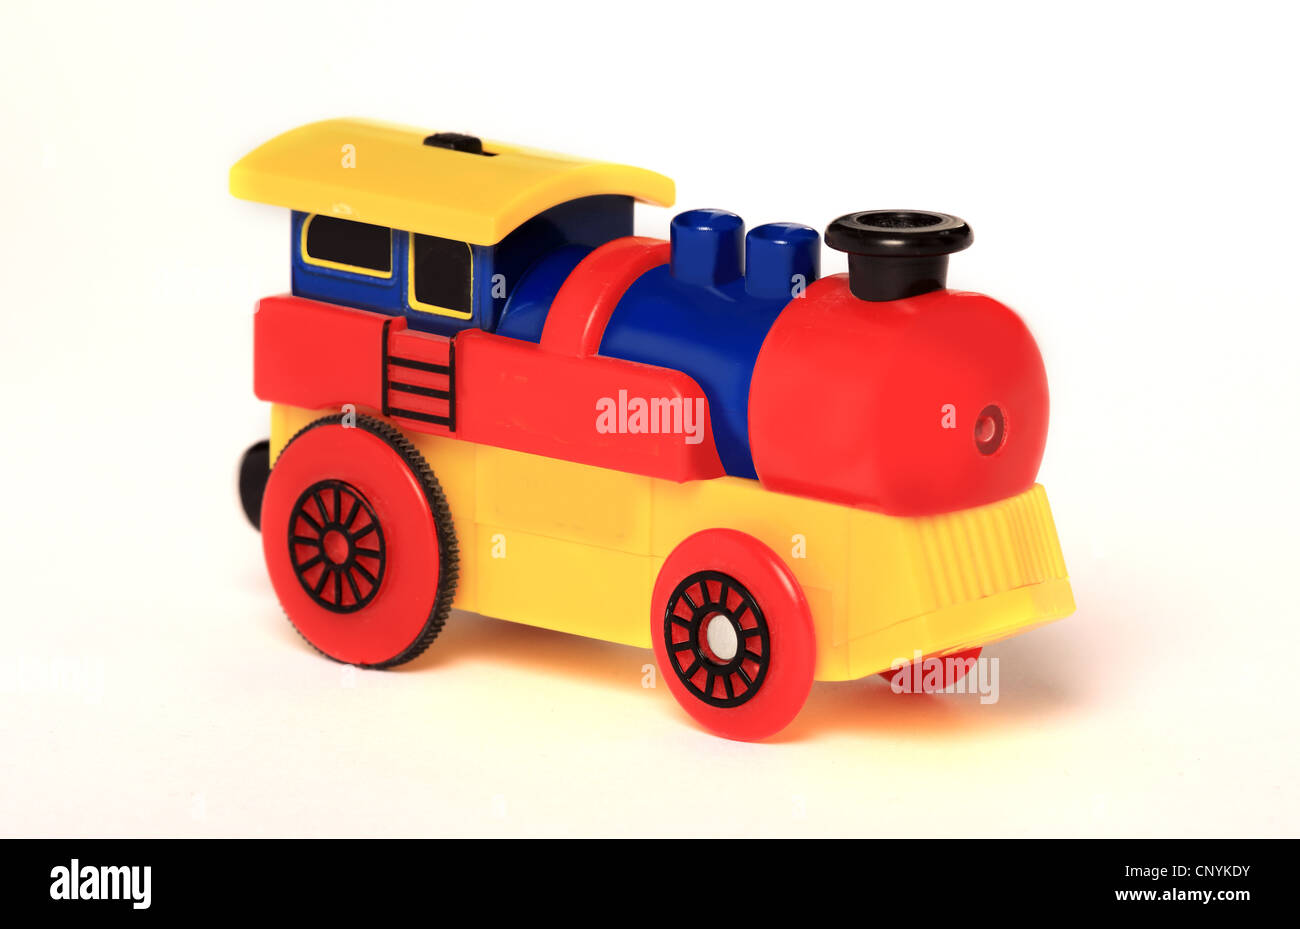 Multi coloured plastic toy train. Stock Photo